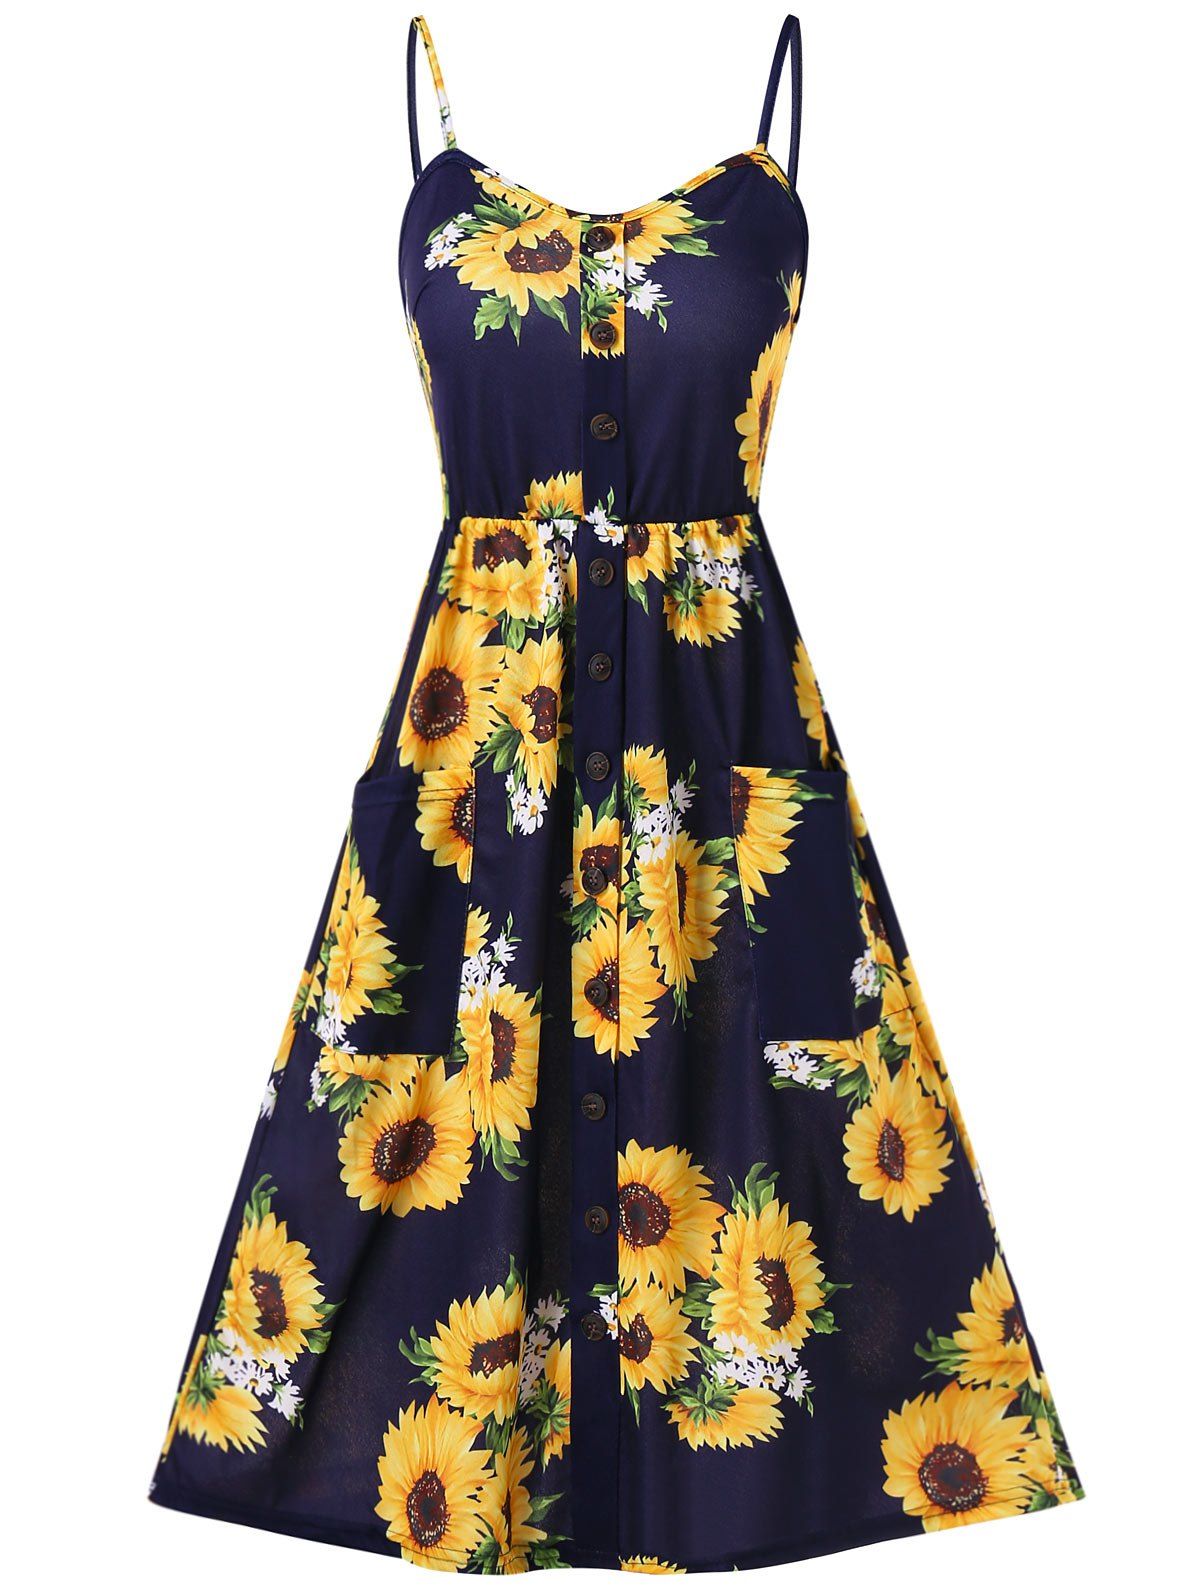 Vacation Sundress Sunflower Print Button Up Summer A Line Cami Dress - DEEP BLUE 2XL